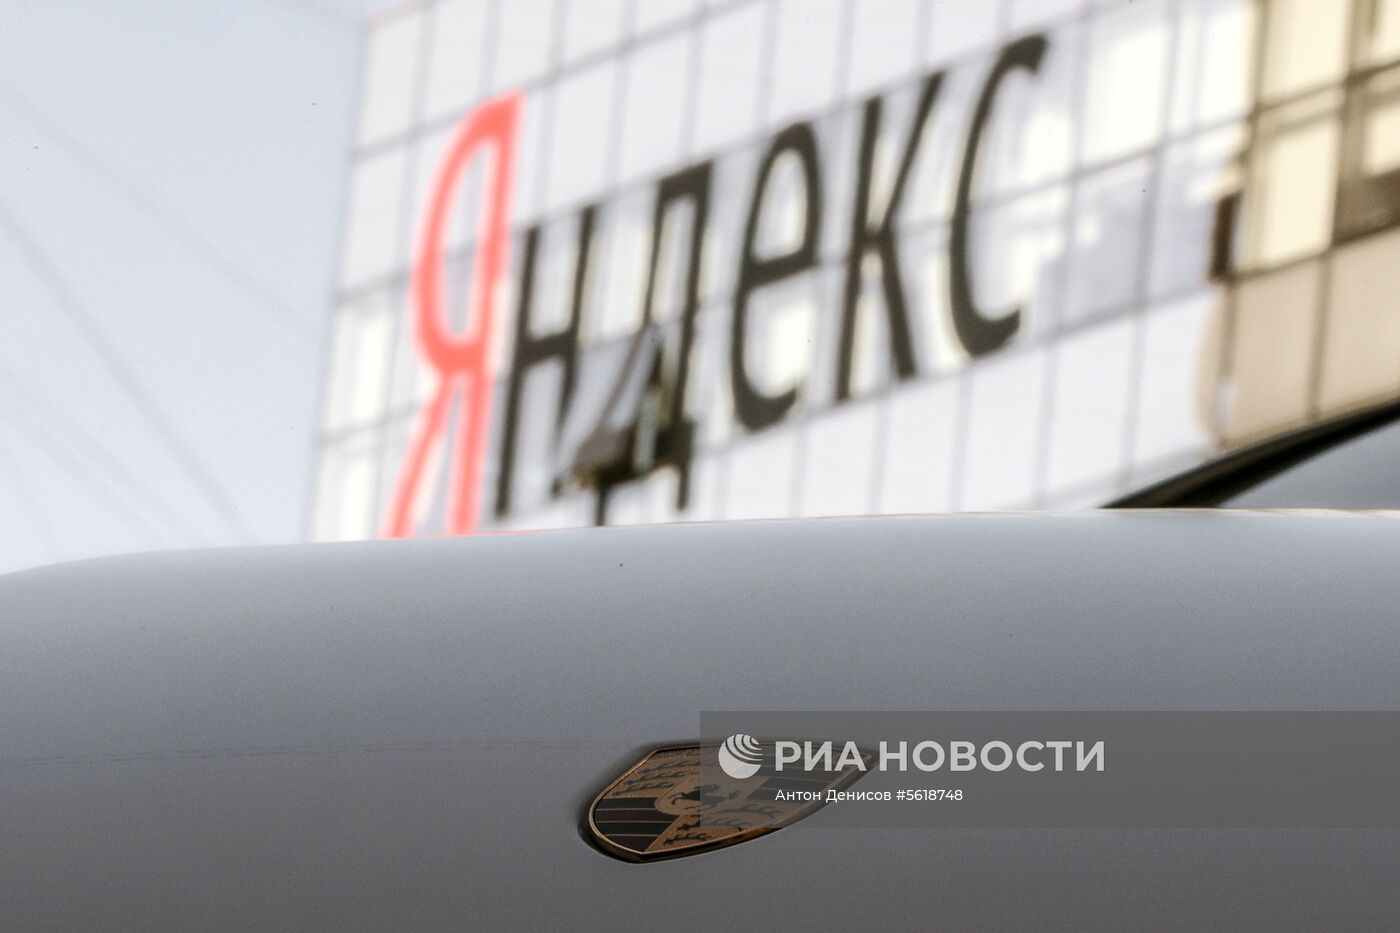 В сервисе каршеринга «Яндекс.Драйв» появились автомобили Porsche